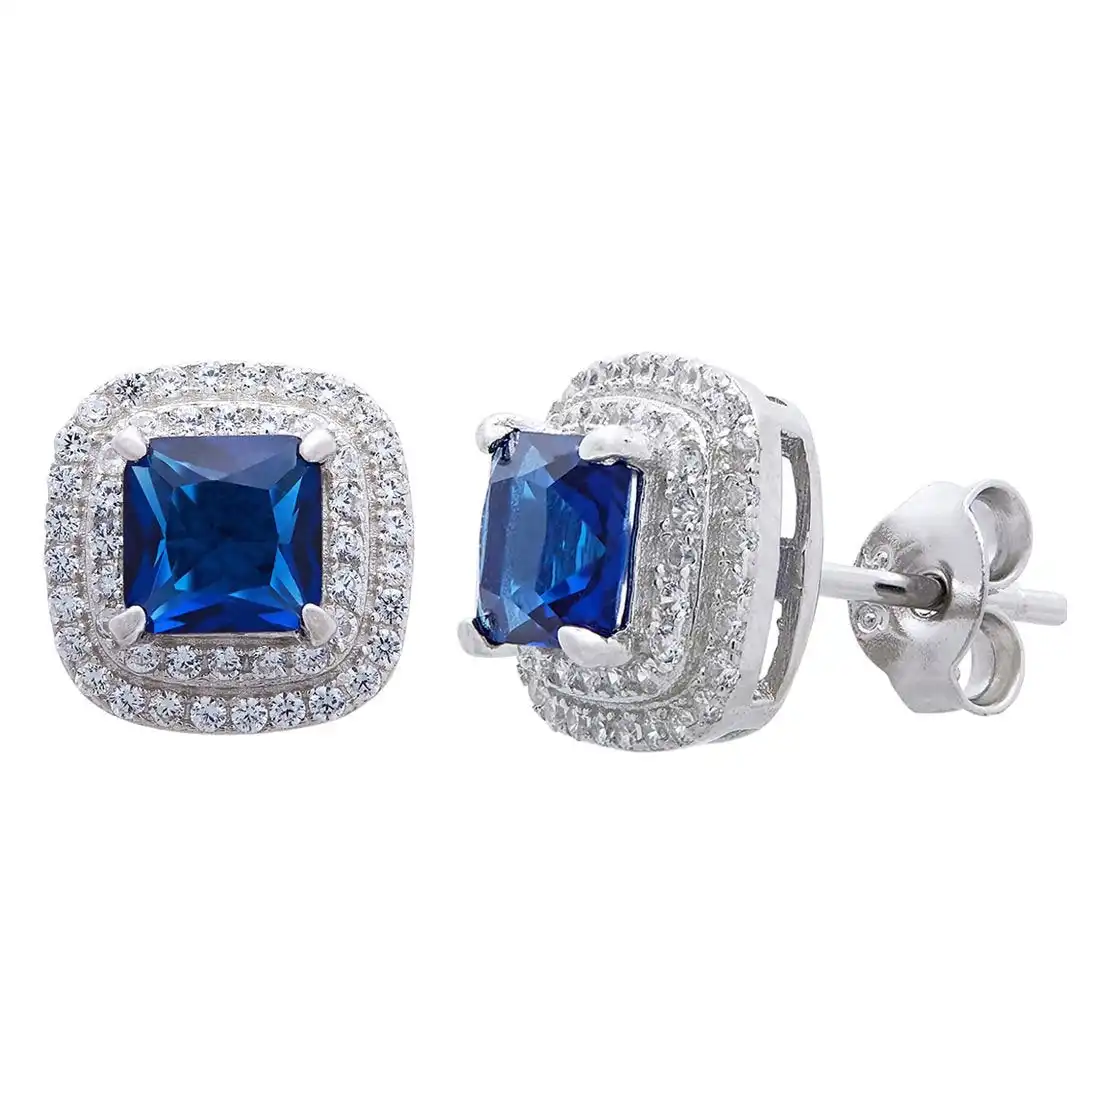 Blue Sapphire Cubic Zirconia Earrings in Sterling Silver